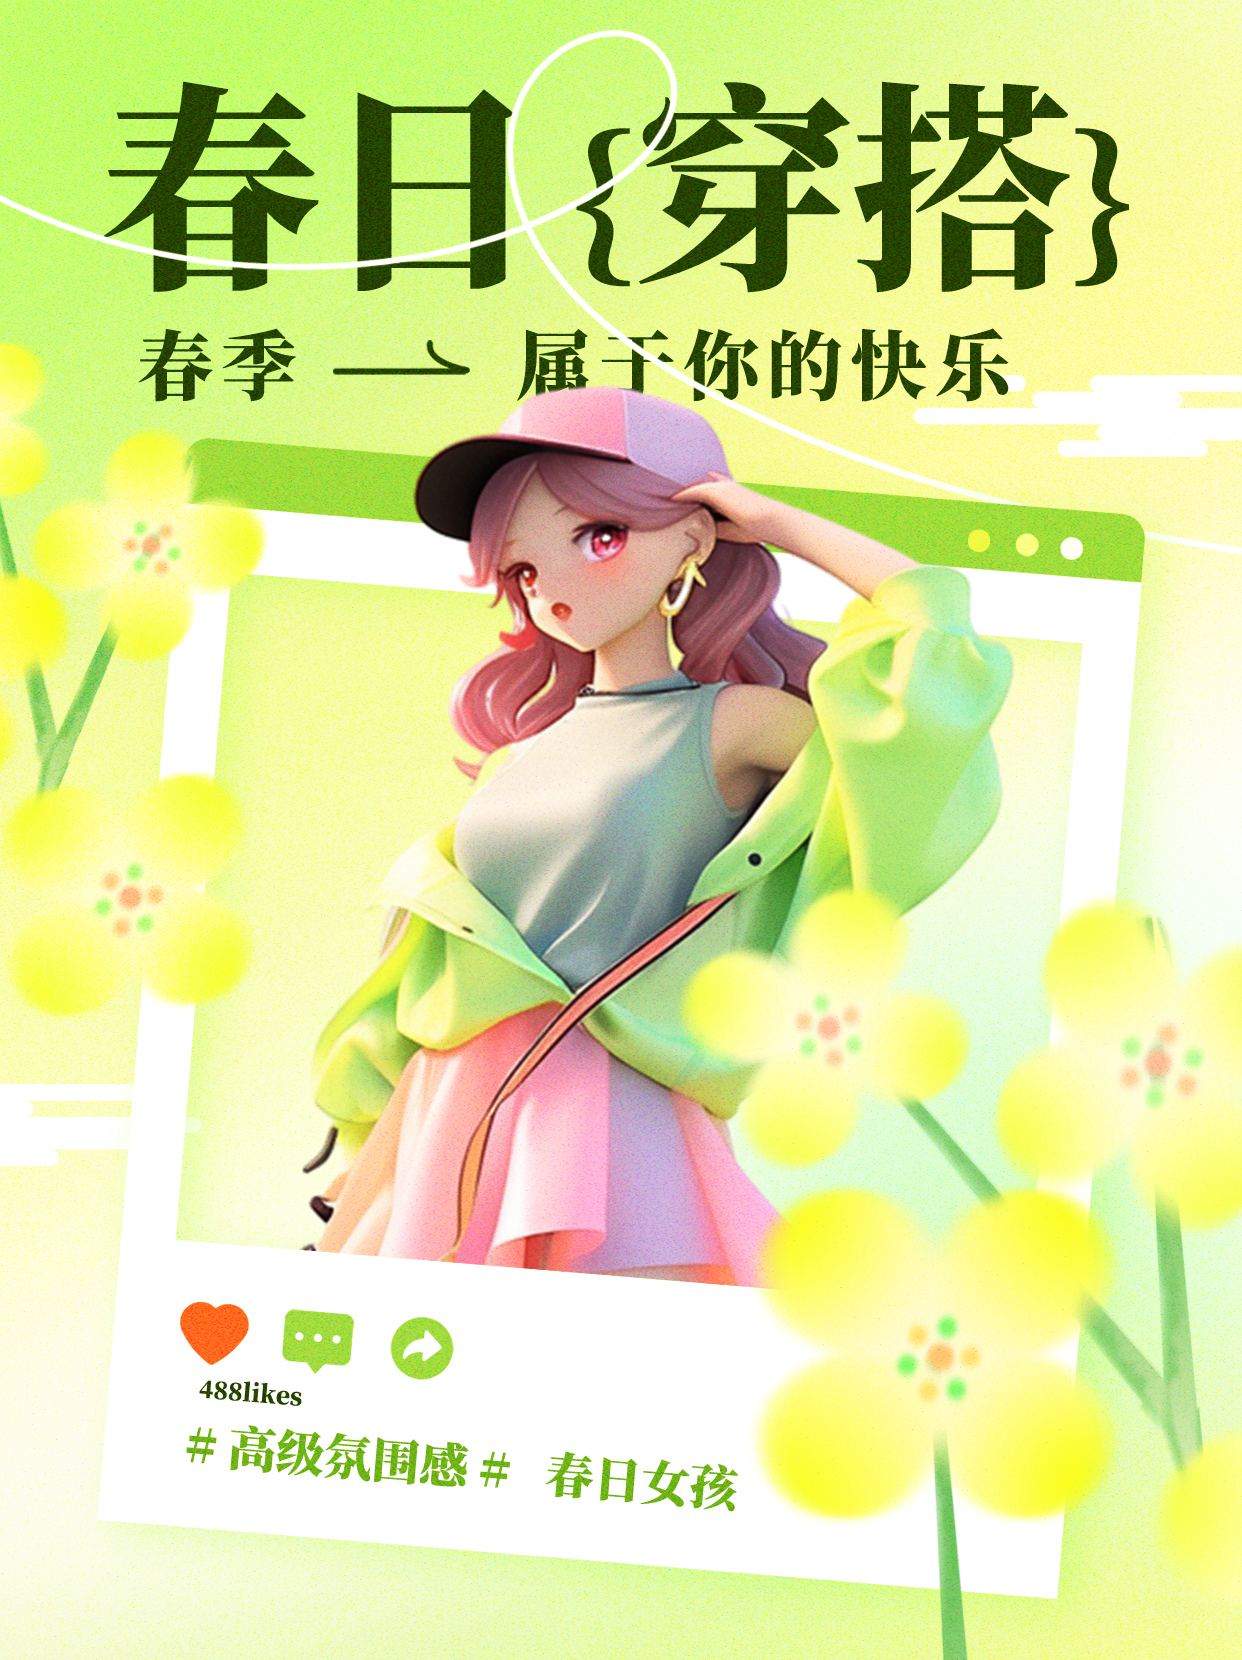 春季穿搭服装穿搭绿色插画简约小红书封面手机海报设计图片